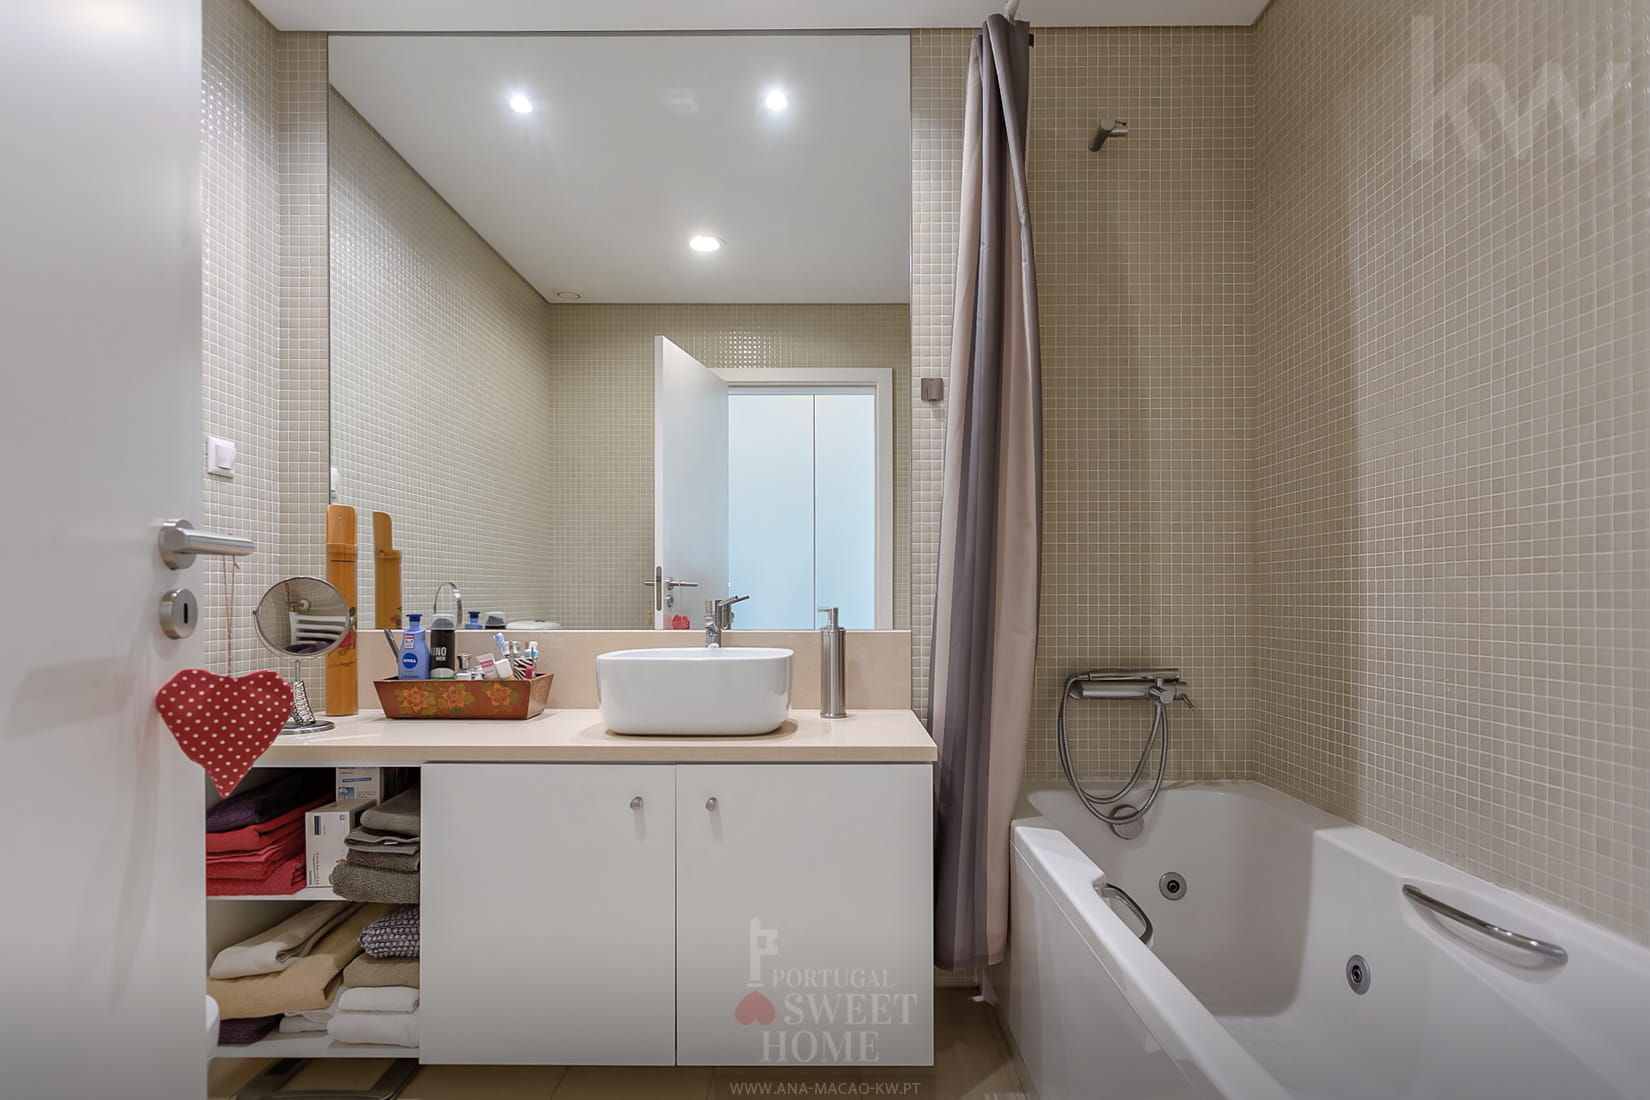 Suite bathroom (4.9 m²)